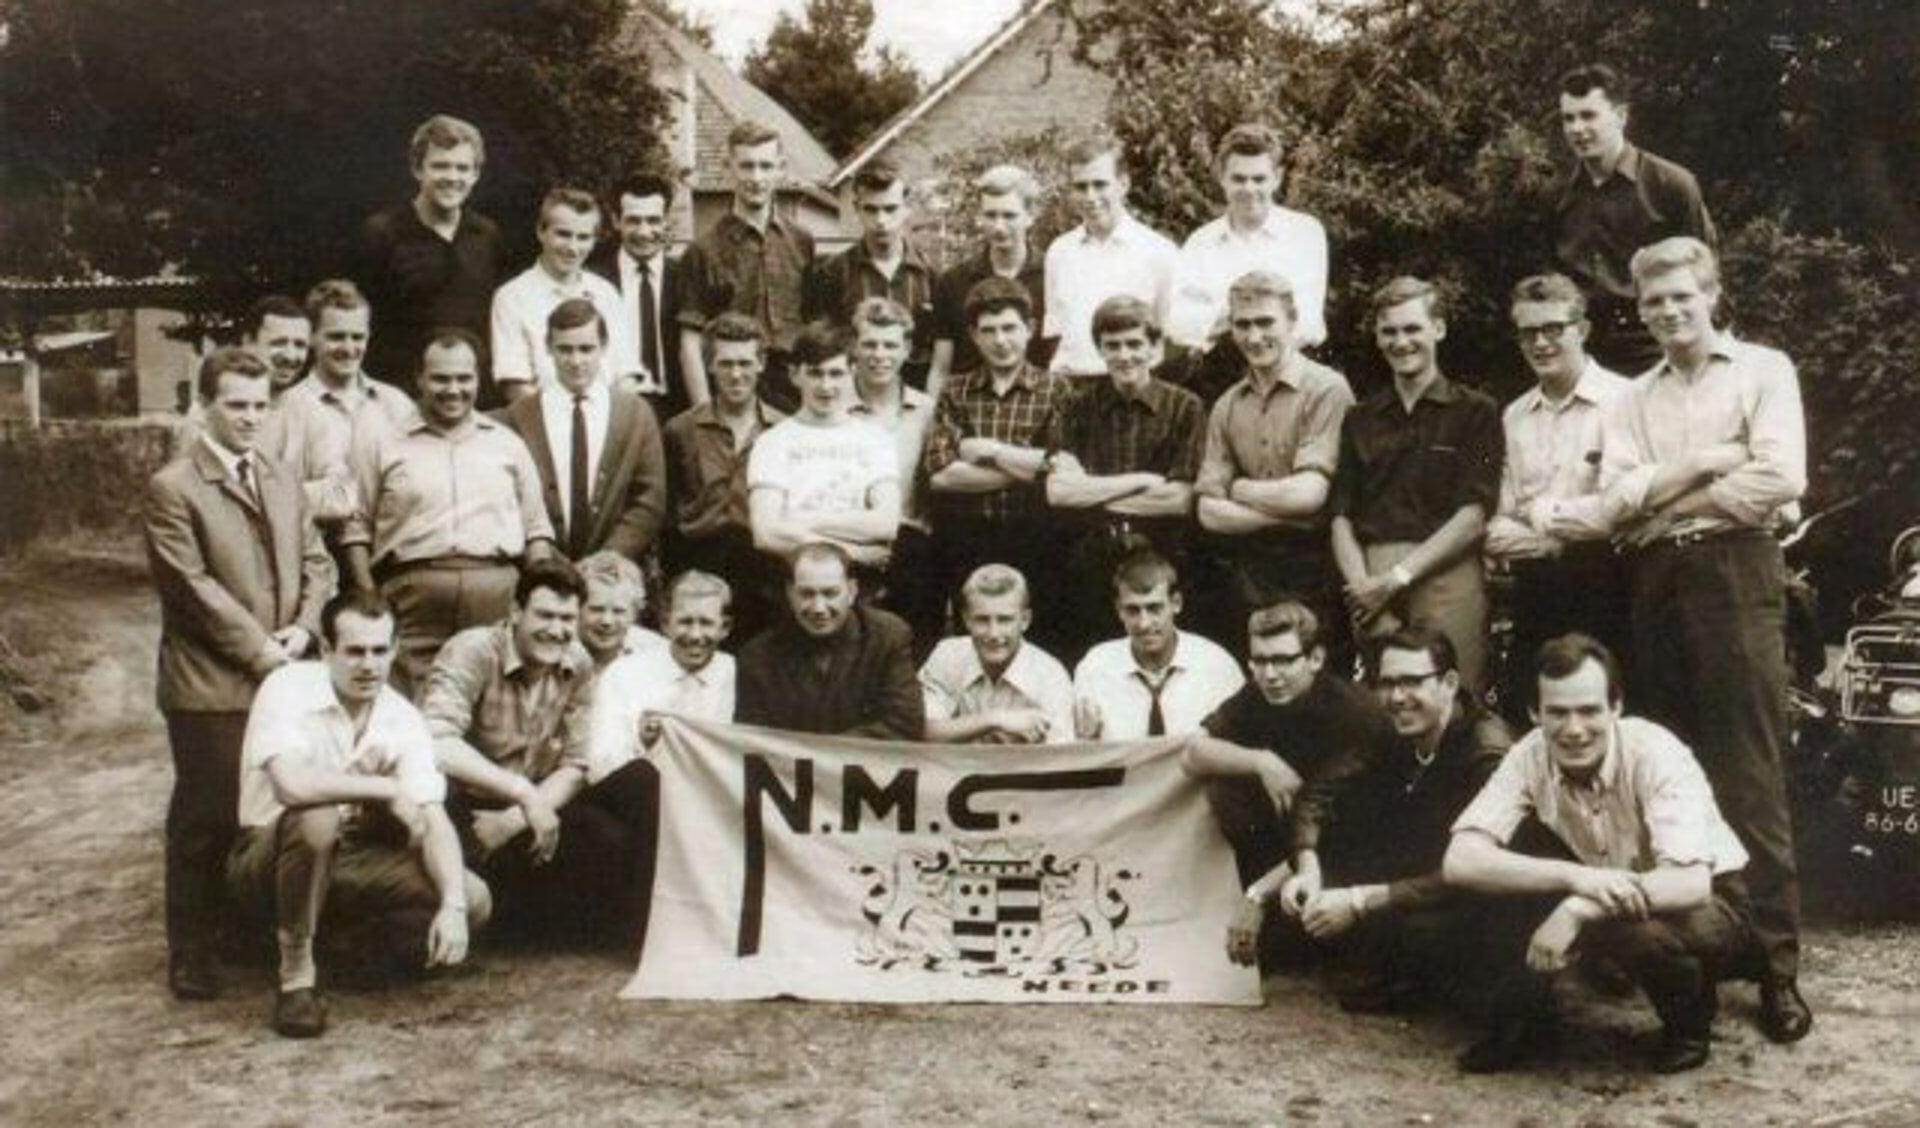 groepsfoto uit 1965 met leden van de Needse Motor Club  Bron: archief NMC